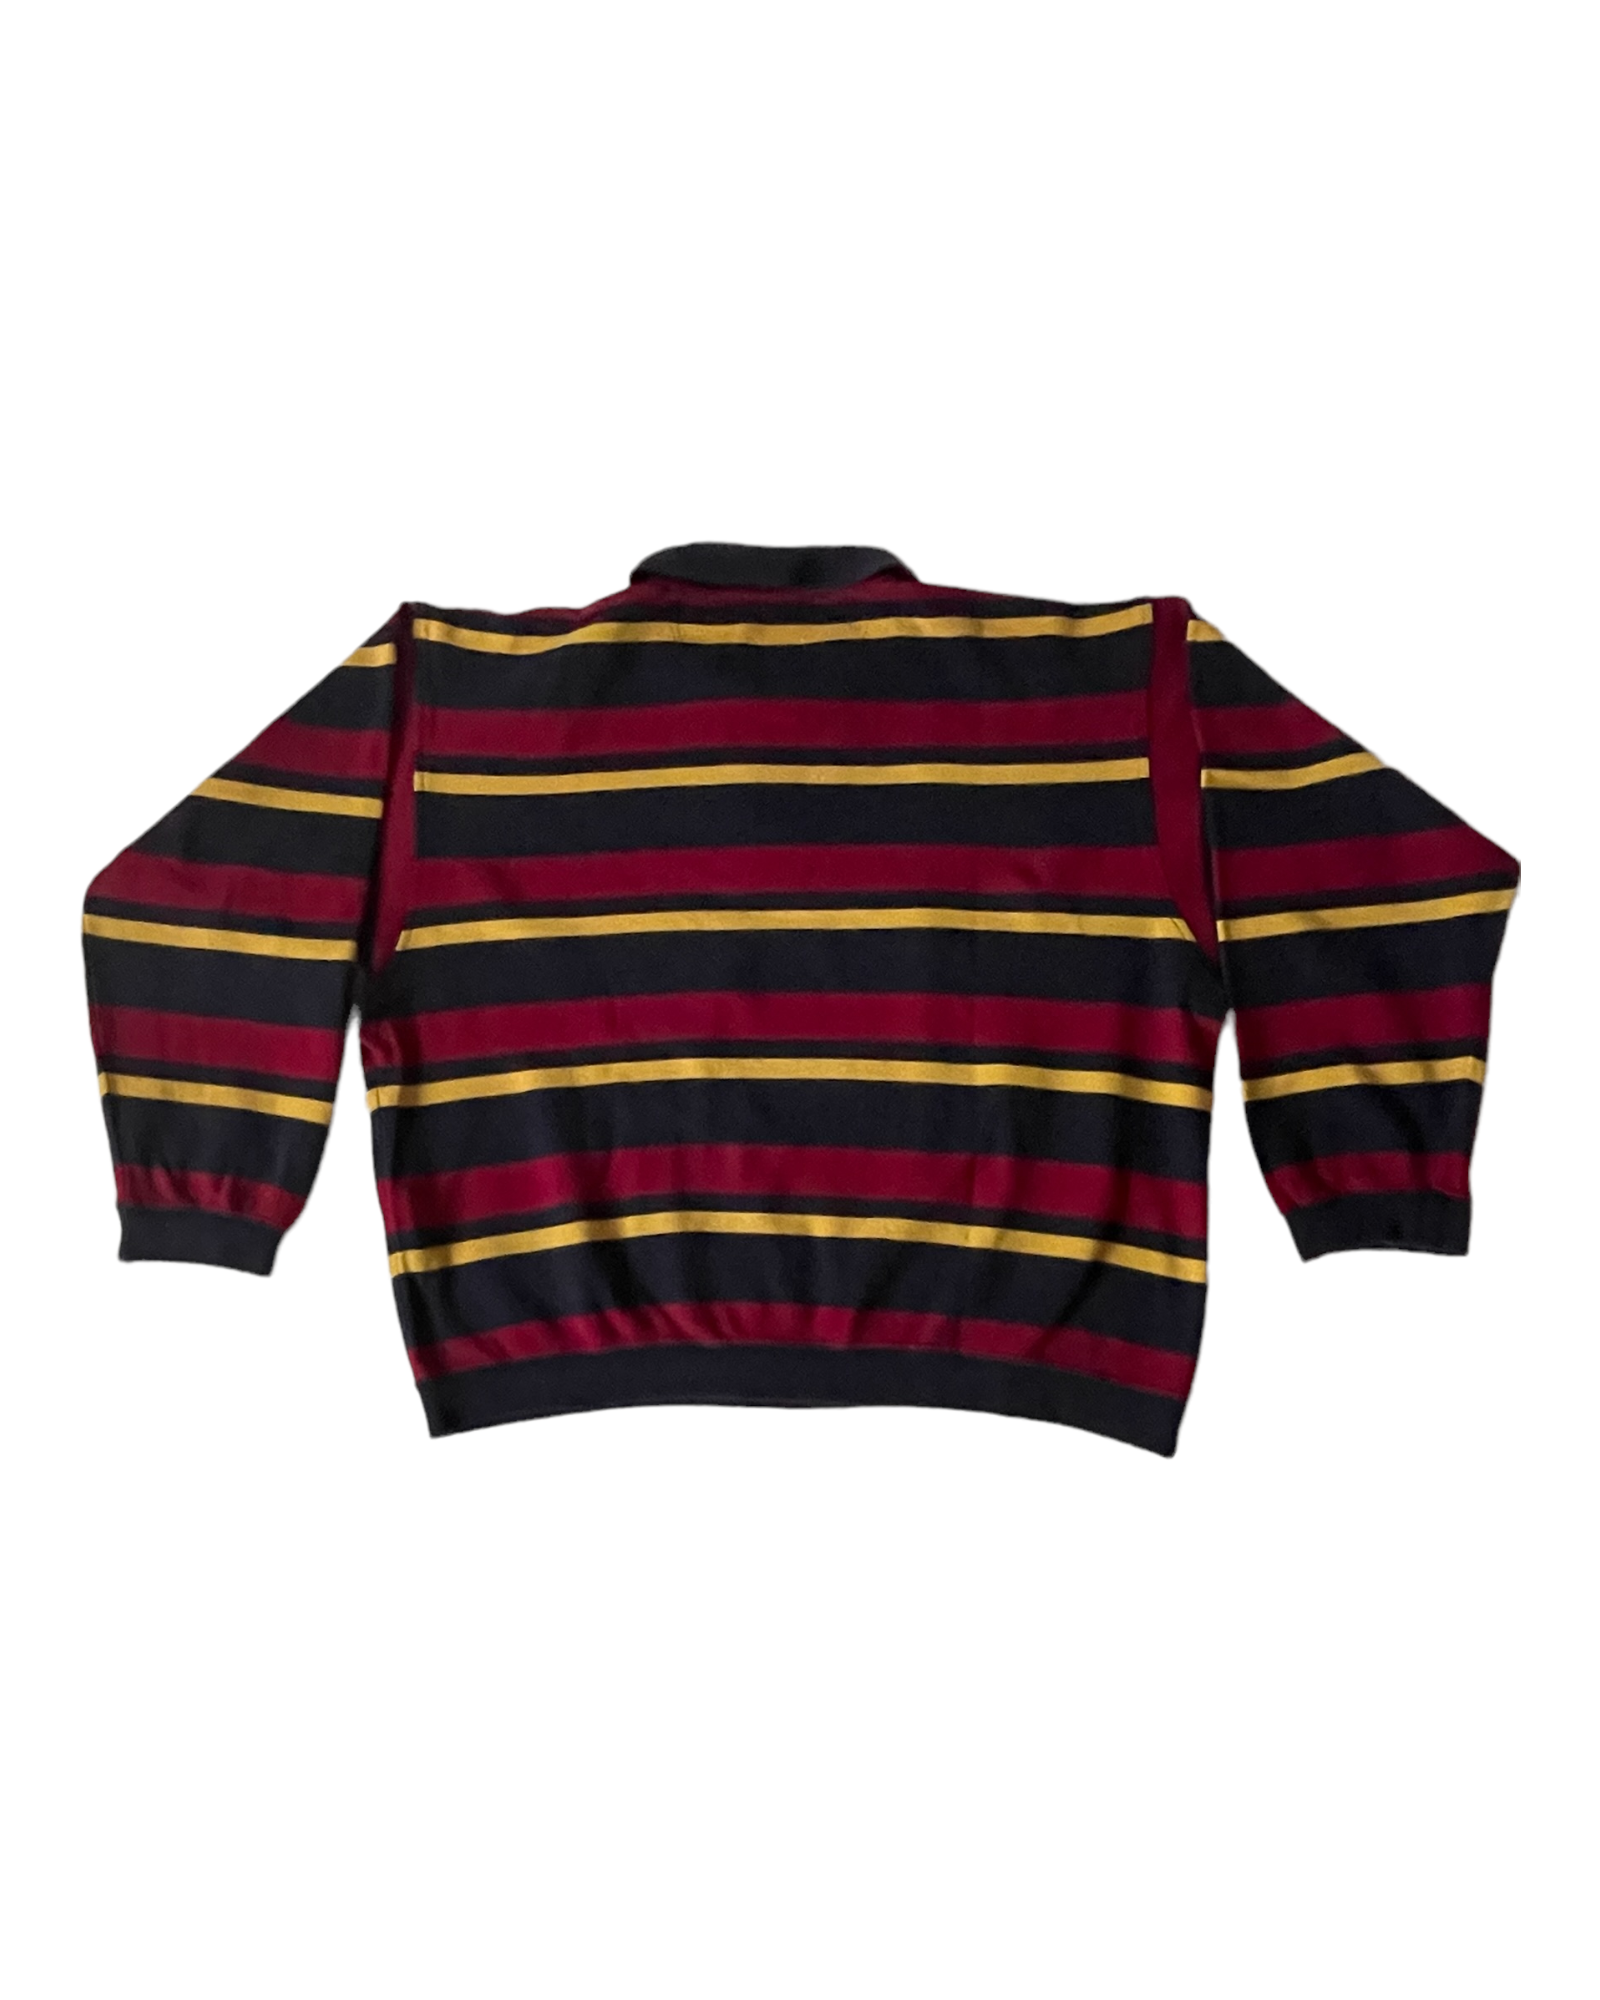 Vintage 90's Lacoste Pique Sweatshirt With Stripes 100% Cotton Size L-XL